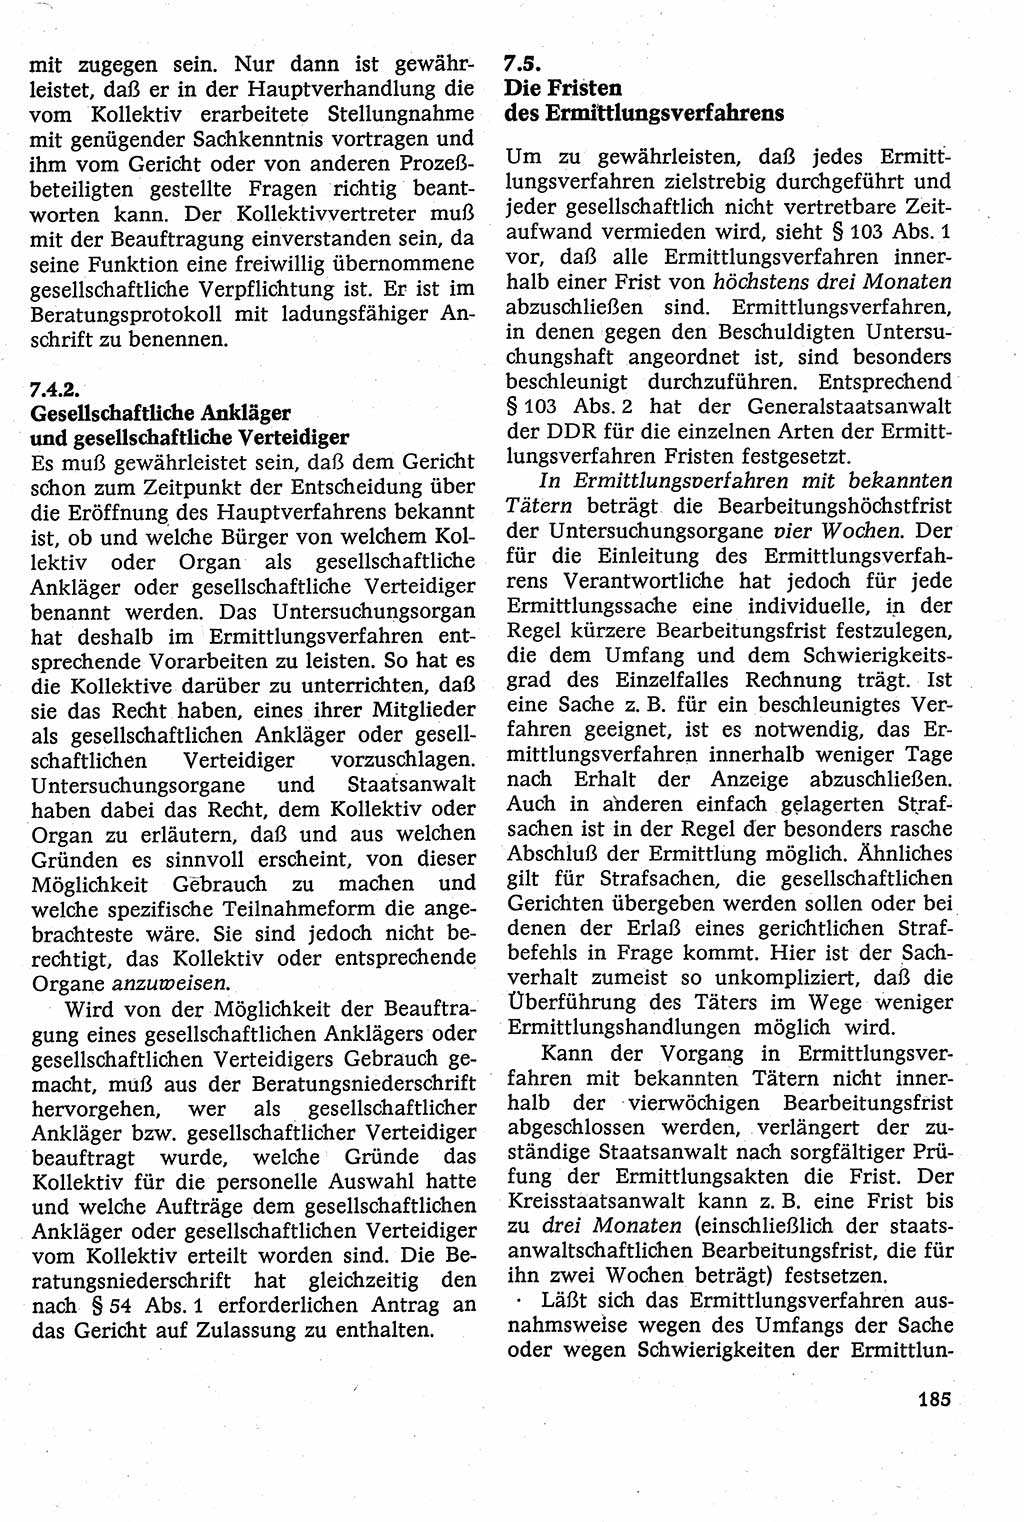 Strafverfahrensrecht [Deutsche Demokratische Republik (DDR)], Lehrbuch 1982, Seite 185 (Strafverf.-R. DDR Lb. 1982, S. 185)